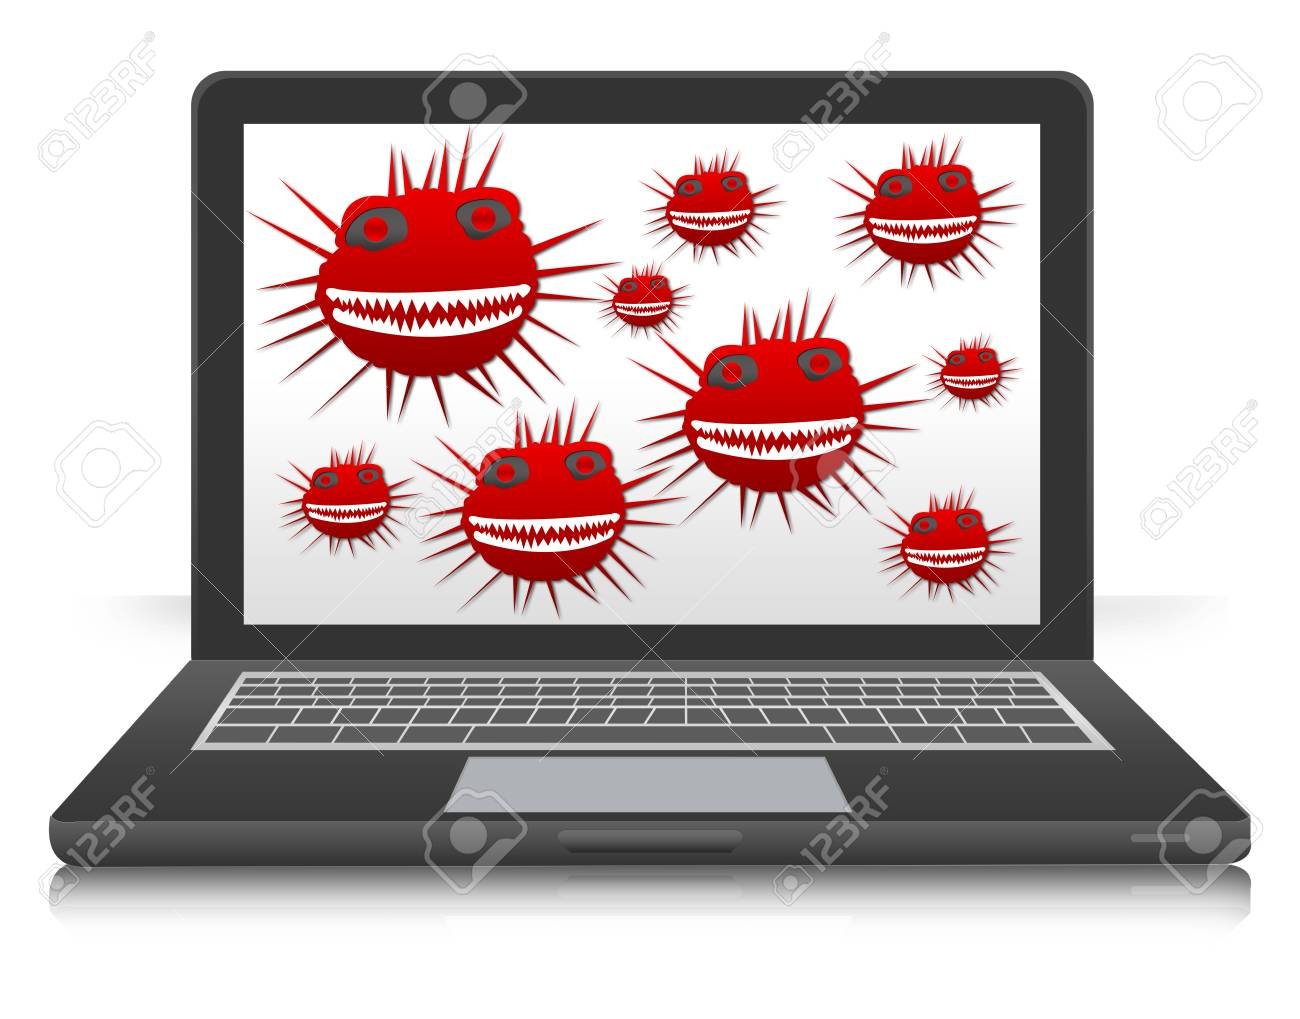 Вирусы в пересылаемых картинках. Компьютерные вирусы. Вирус на компьютере. Компьютерные вирусы картинки. Компьютерный вирус иллюстрация.